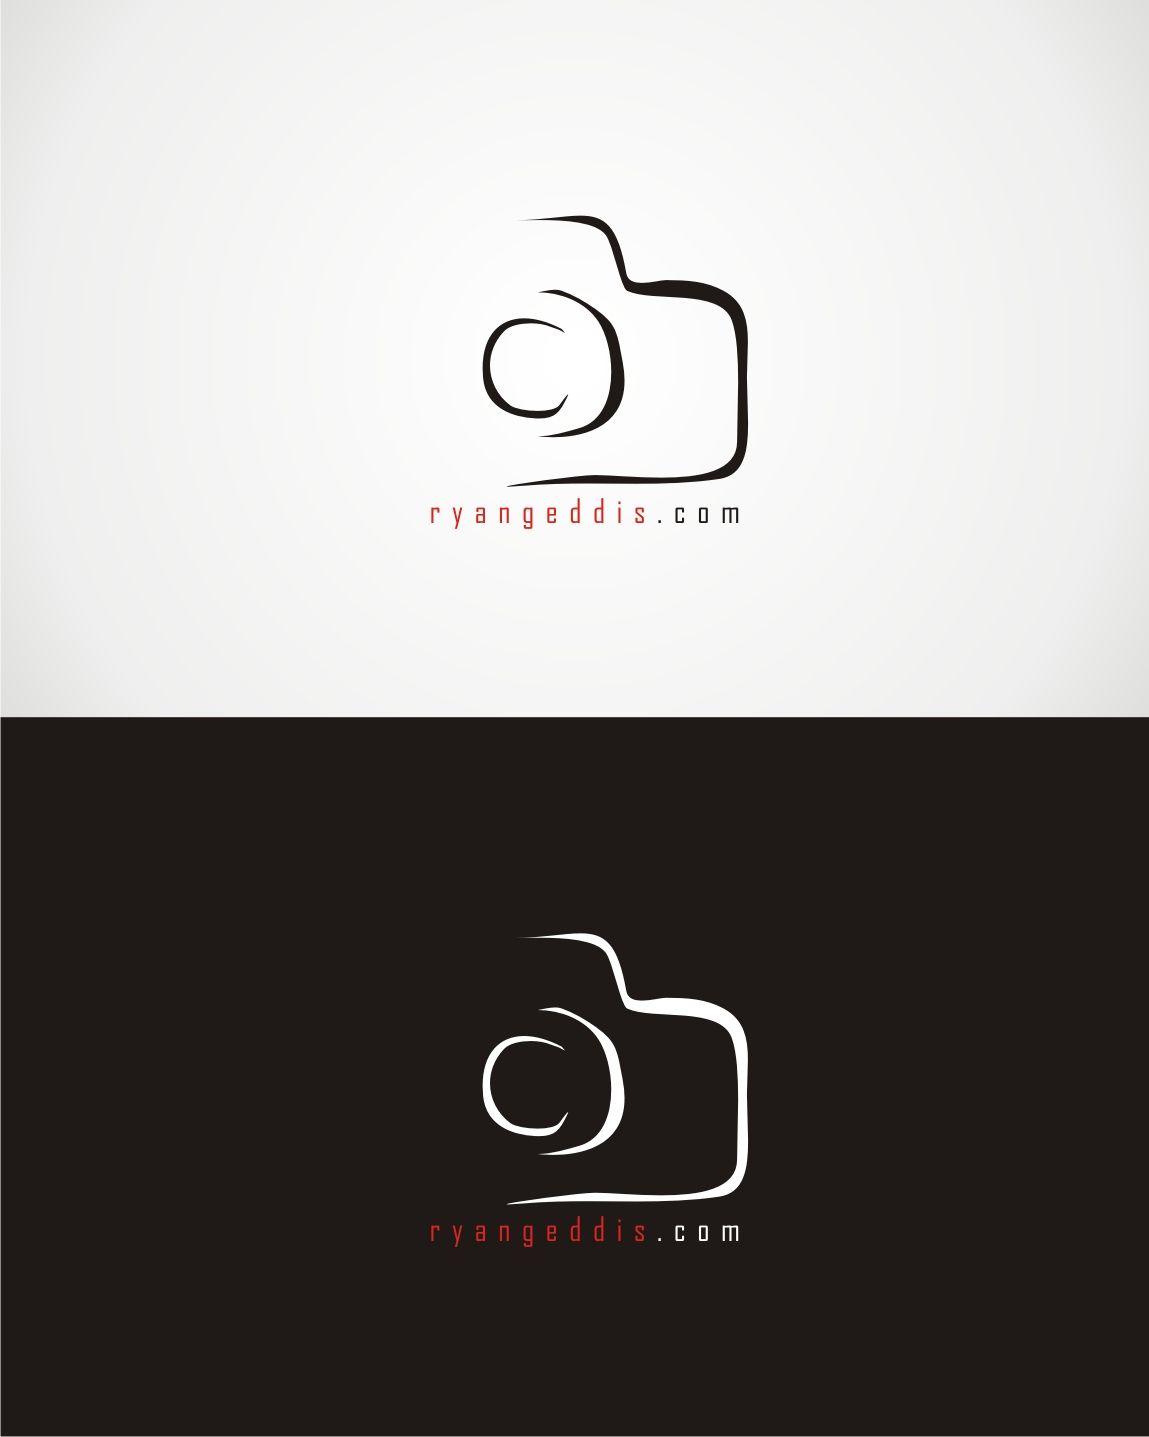 Camer Logo - Camera Logo Design for ryangeddis.com by kamiranz | Design #9529865